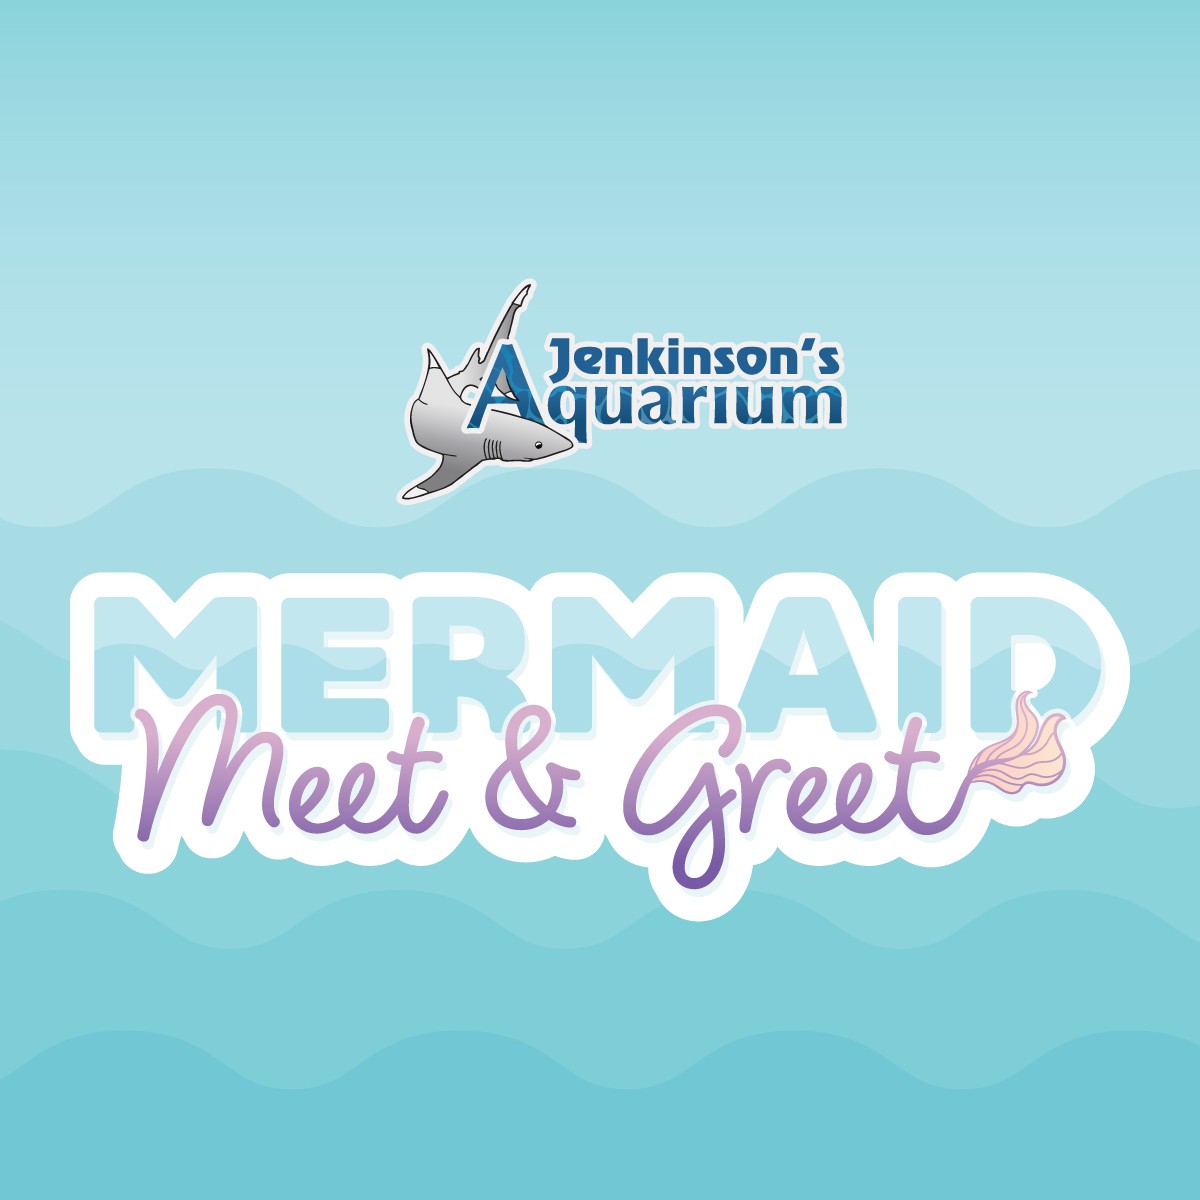 merrmaid meet & great at jenkinsons aquarium